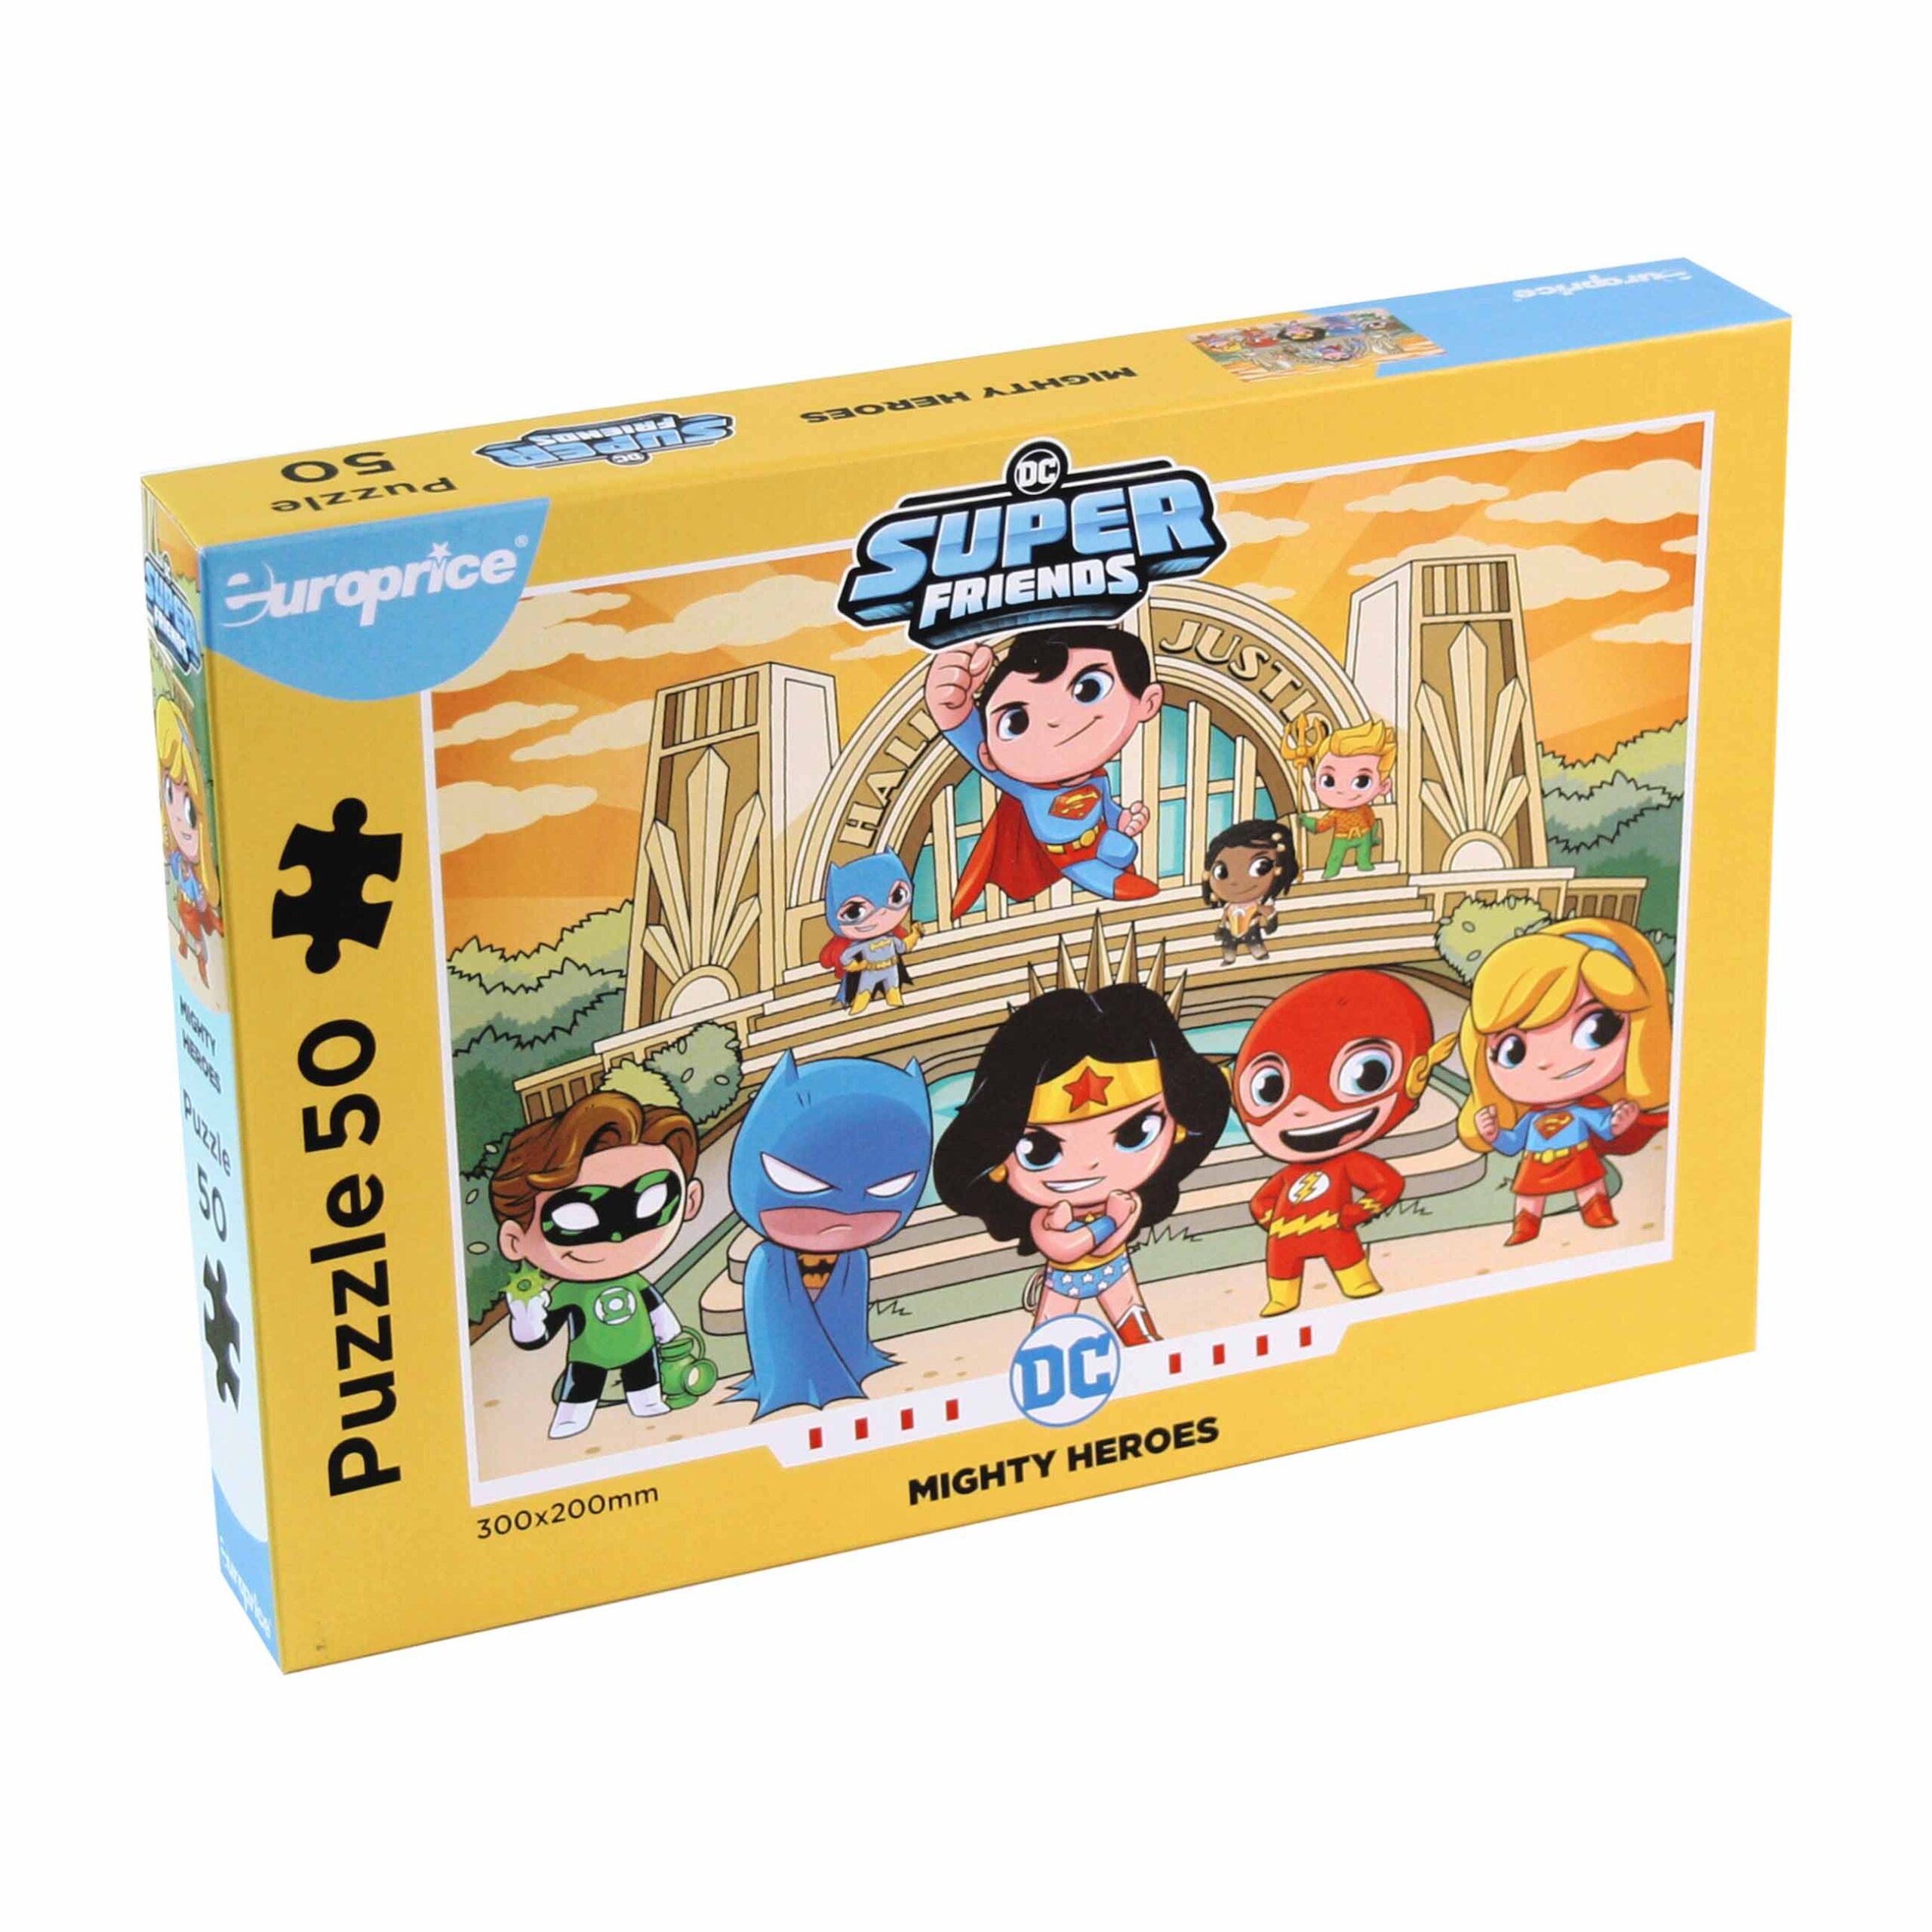 Caixa do Puzzle Super Friends: Mighty Heroes. Mostra uma caixa amarela com as adoráveis personagens que fazem parte da liga da justiça.